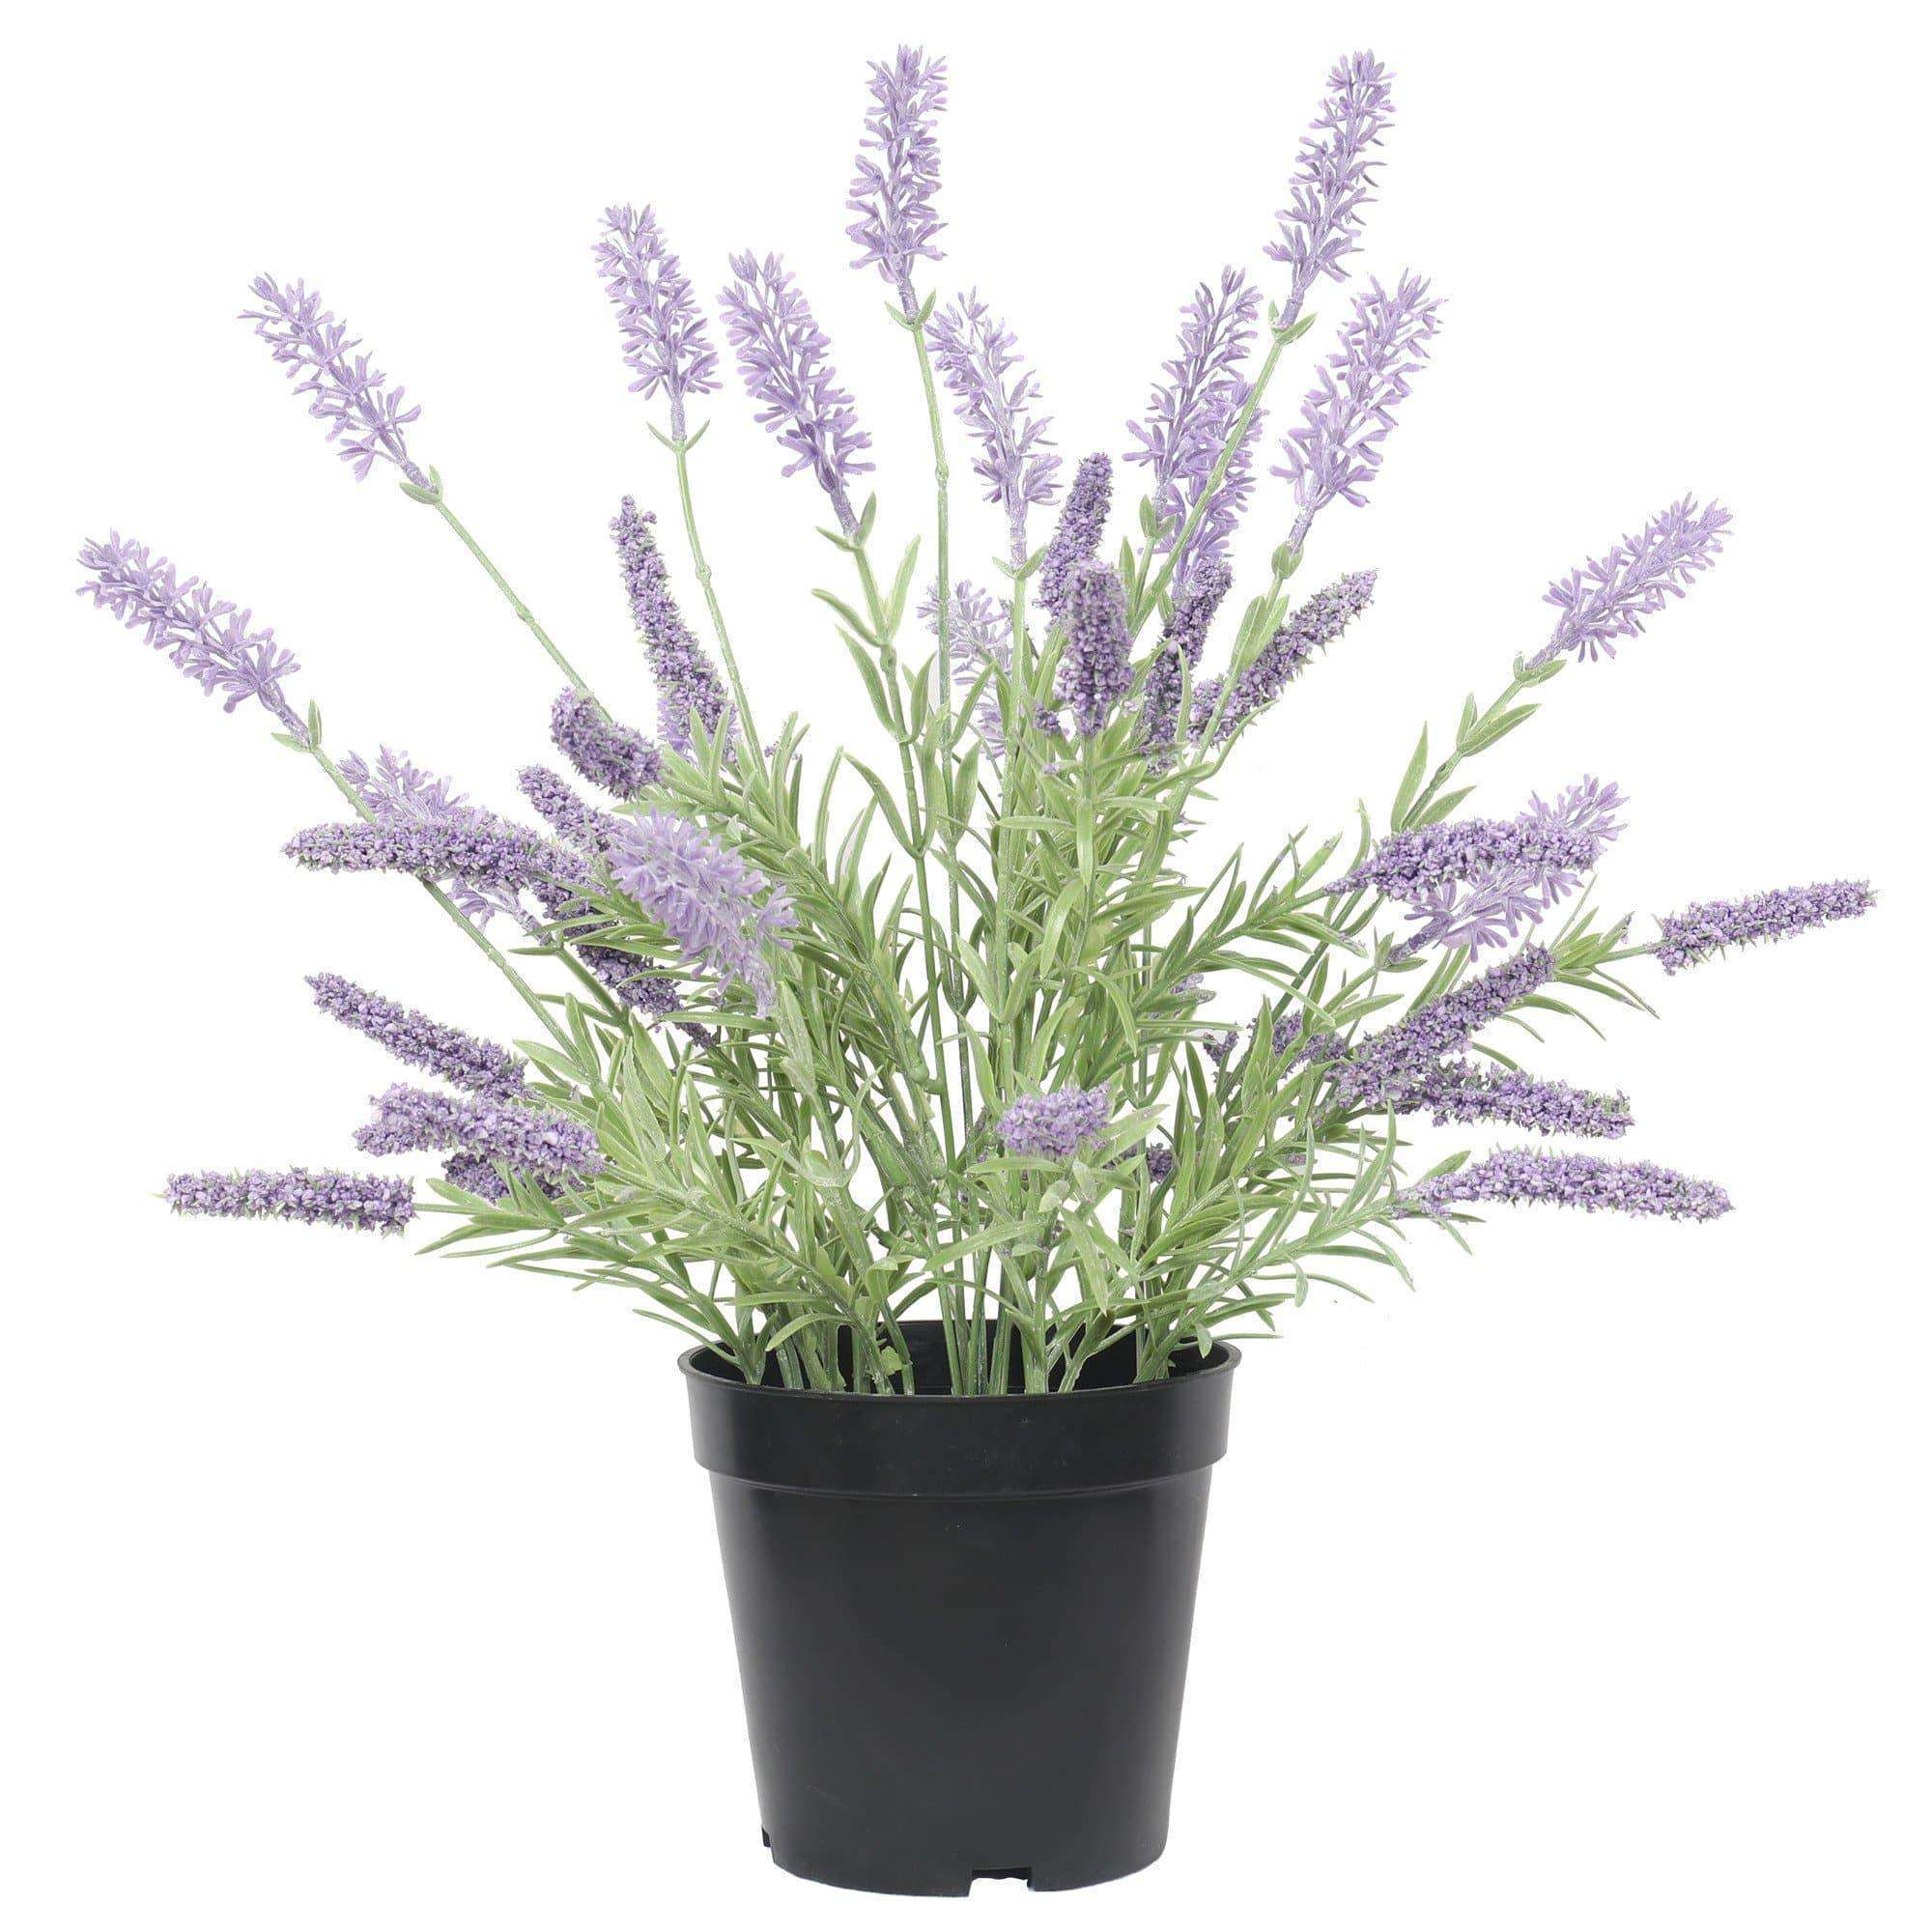 Artificial Lavender Plant in a Pot 40cm